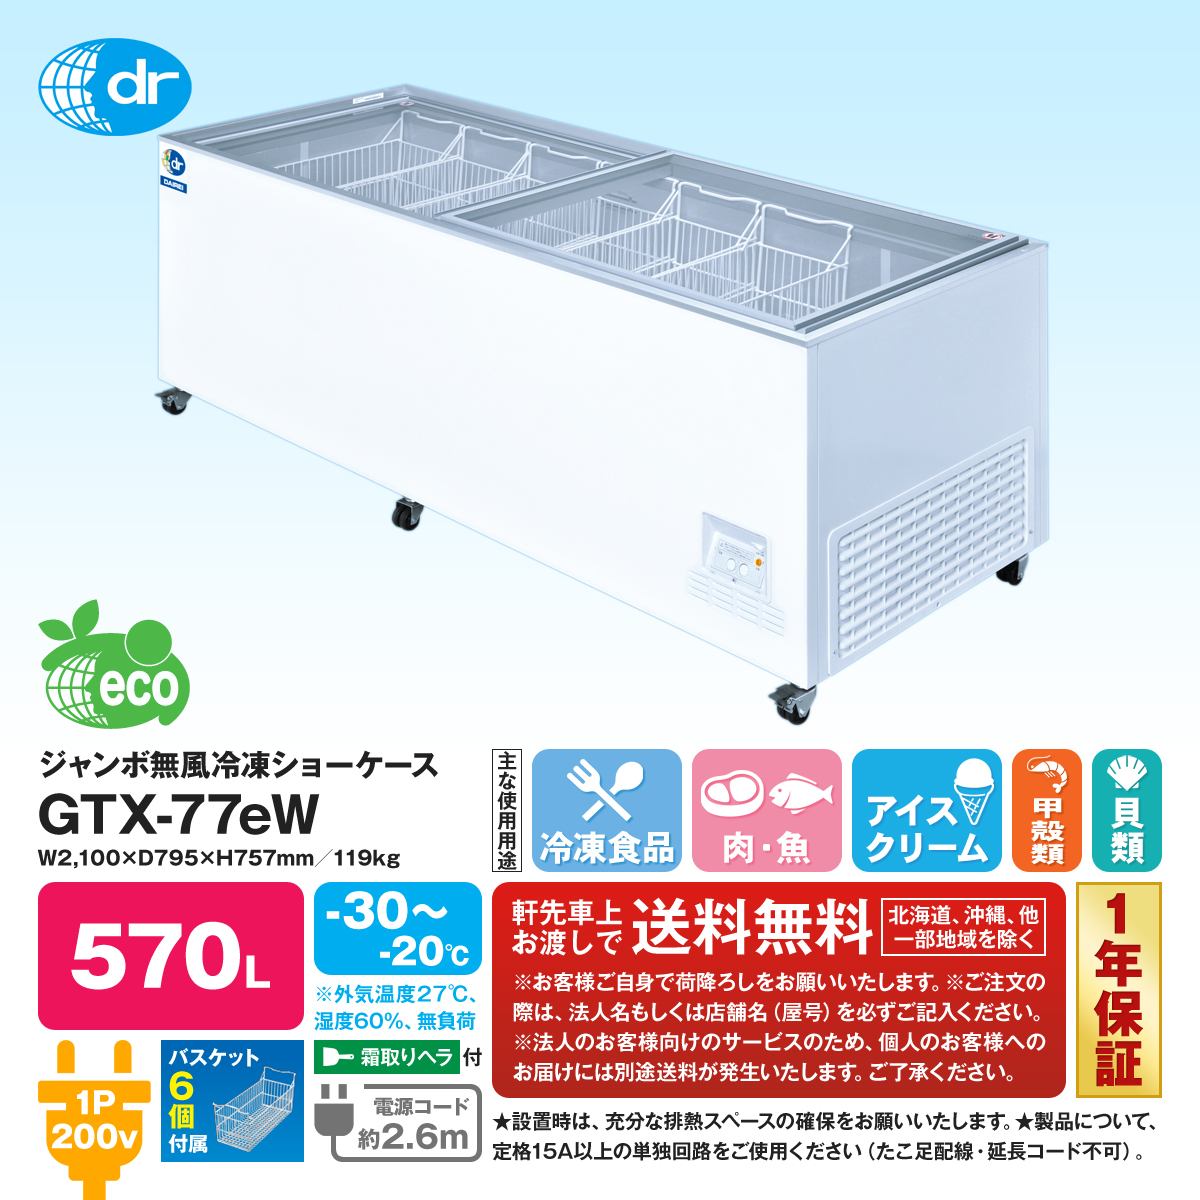 有限会社ユウキ / ジャンボ無風冷凍ショーケース『GTX-77eW』